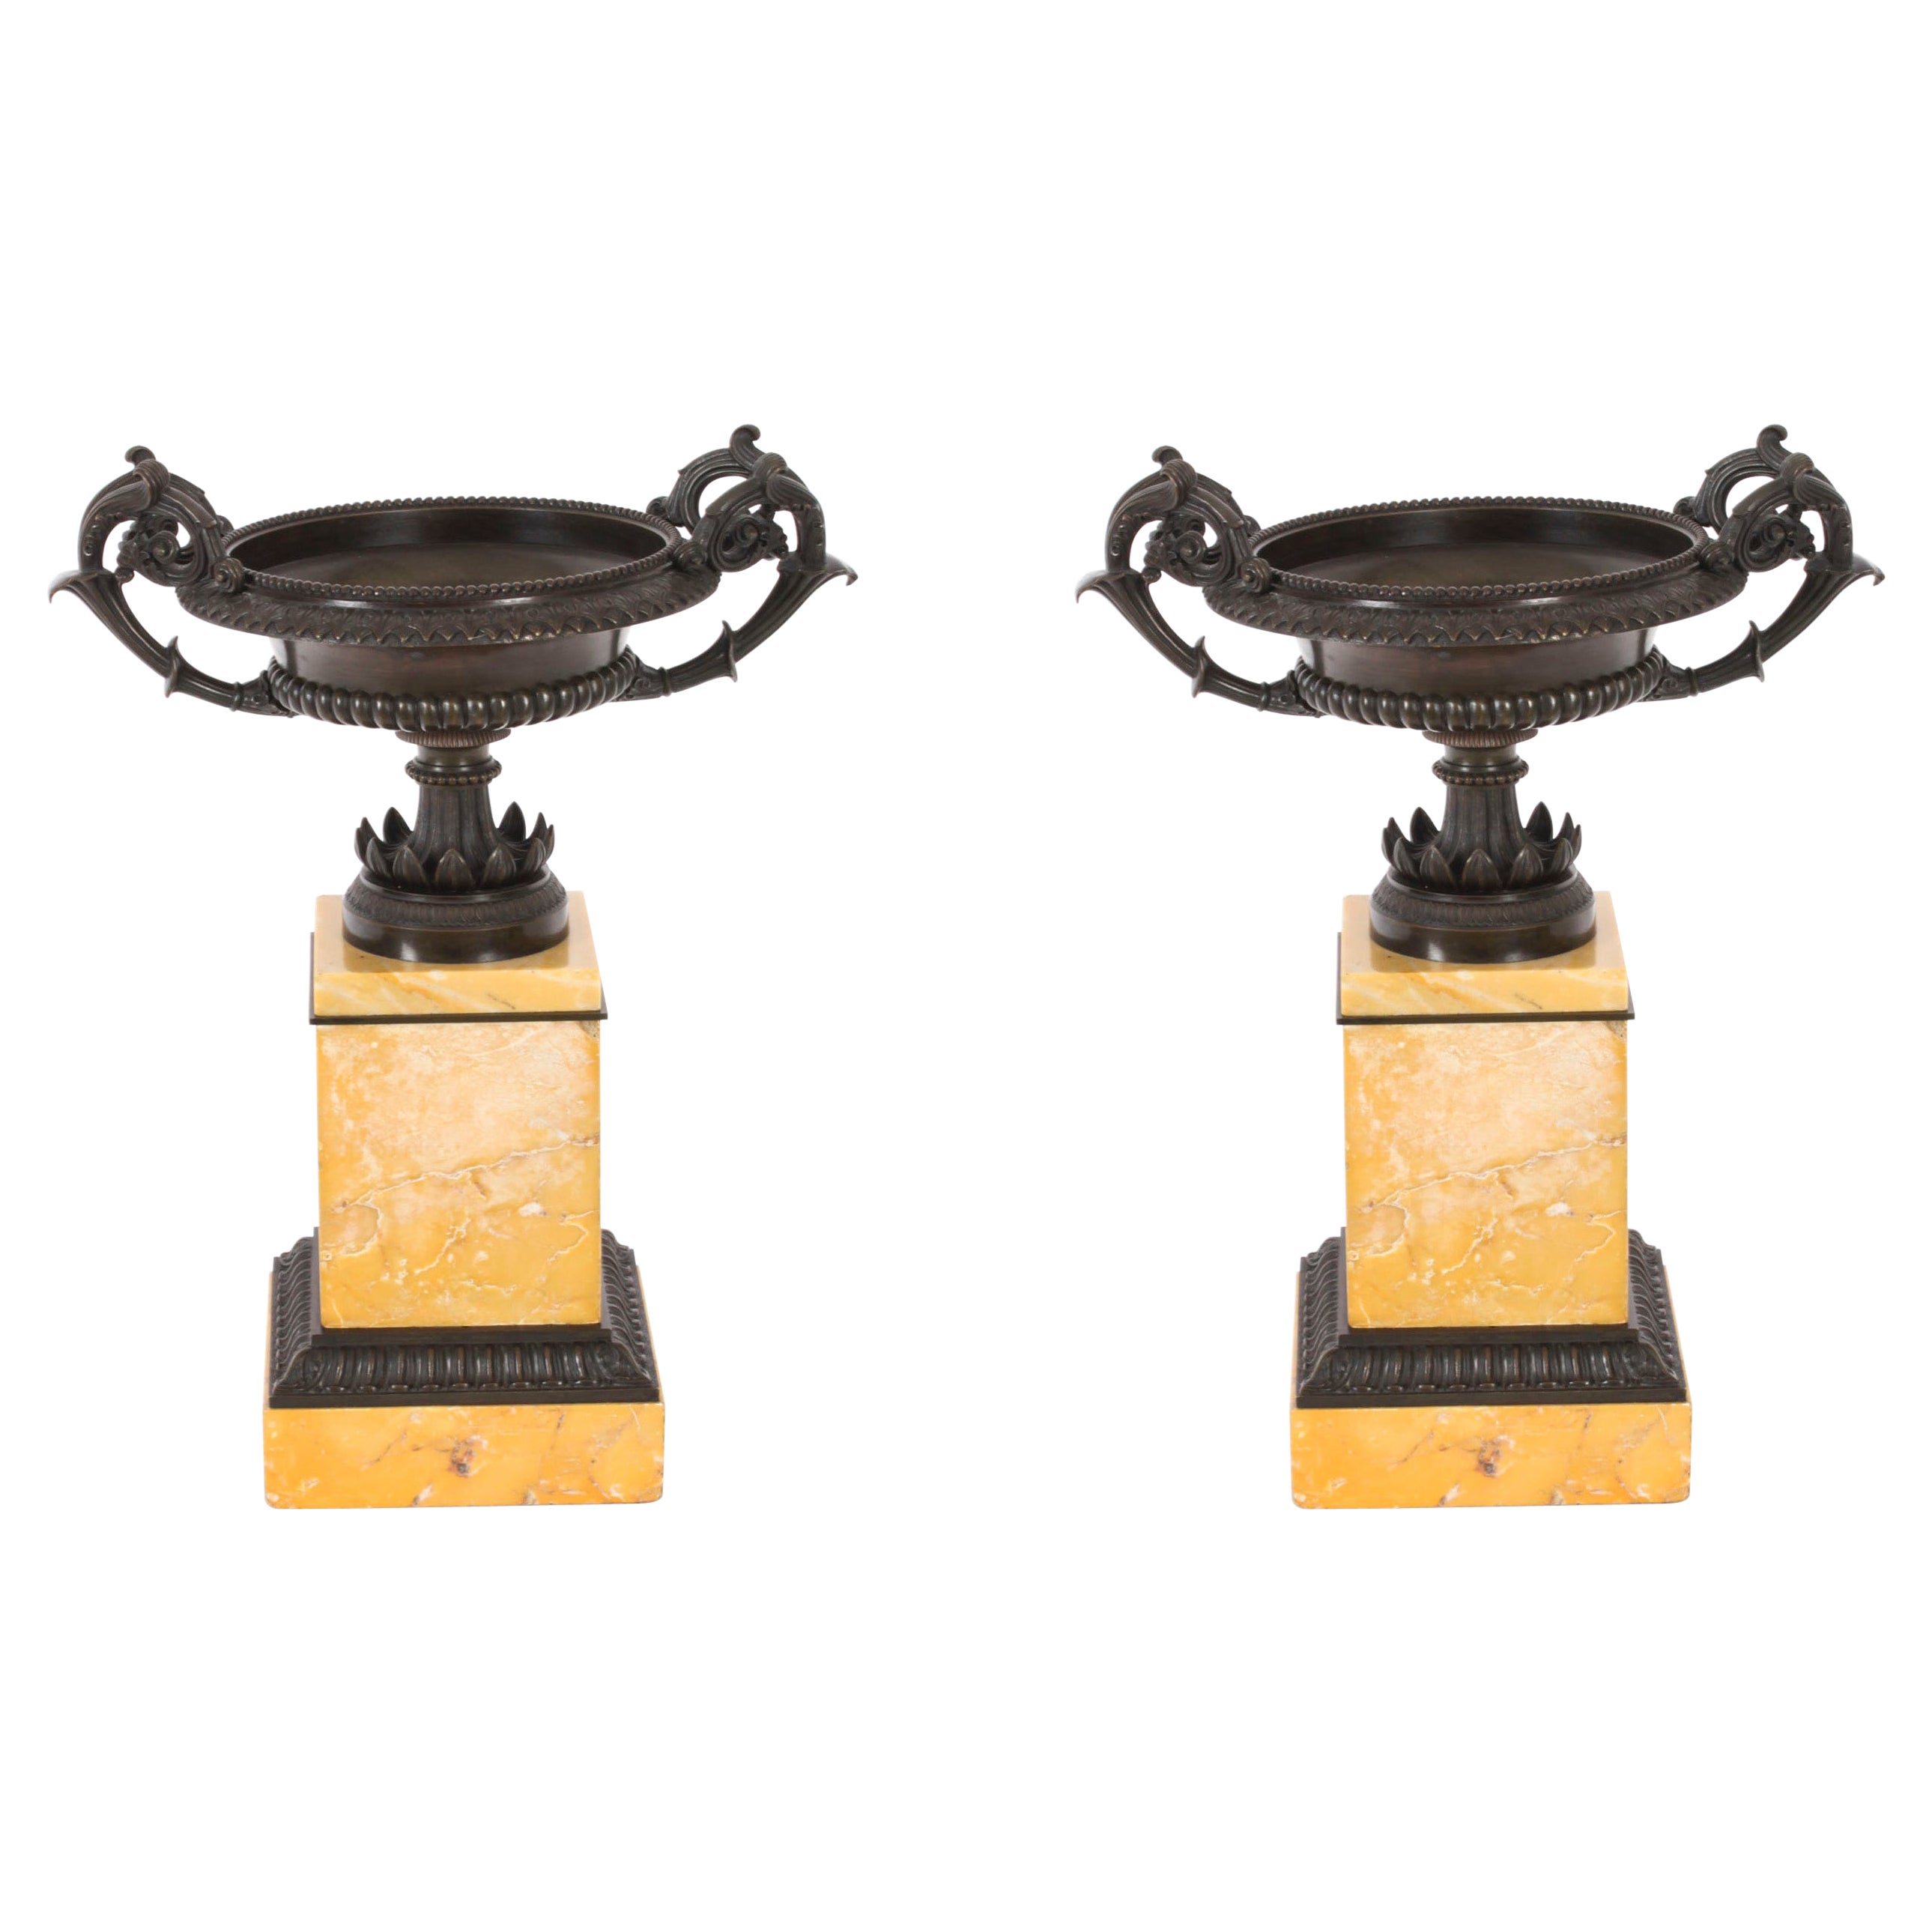 Ancienne paire d'urnes Campana Grand Tour italienne 19ème siècle